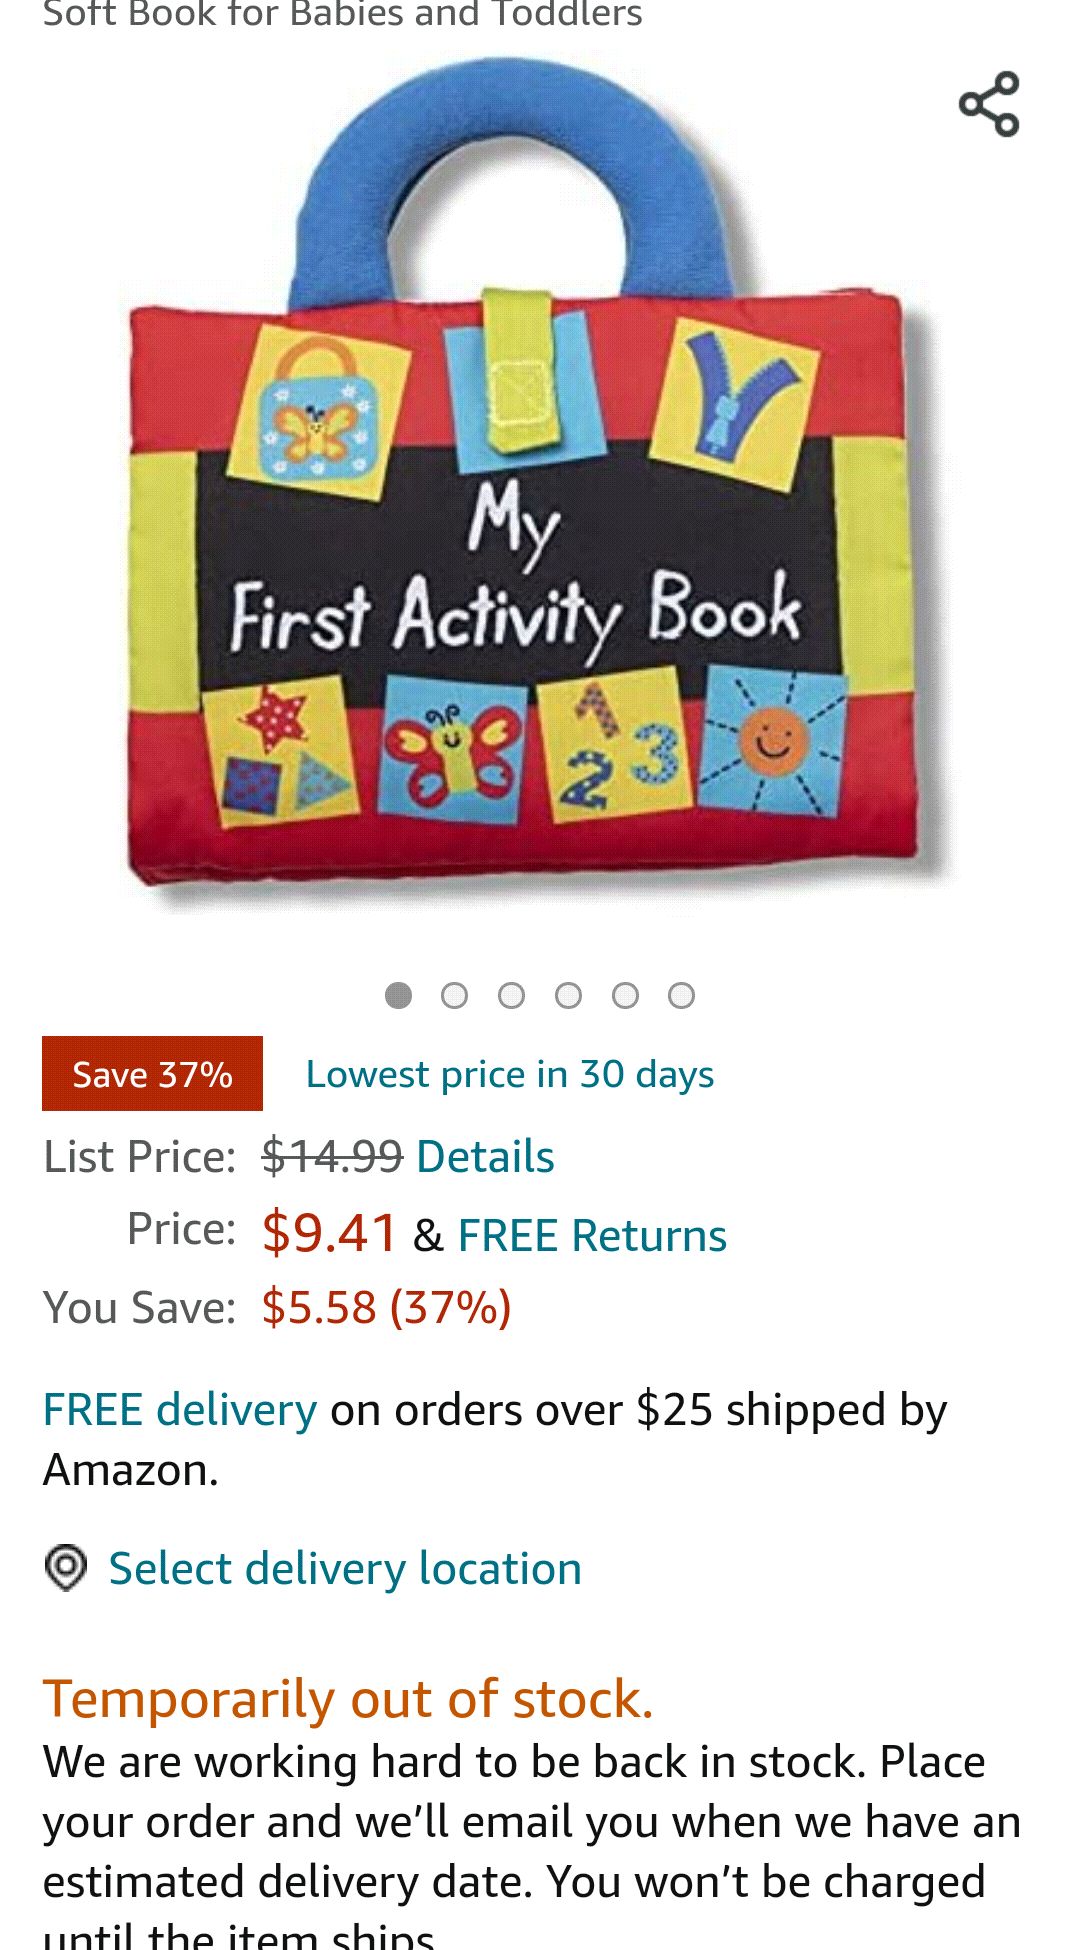 我的第一本互动书 Melissa & Doug K’s Kids My First Activity Book 8-Page Soft Book for Babies and Toddlers : Toys & Games